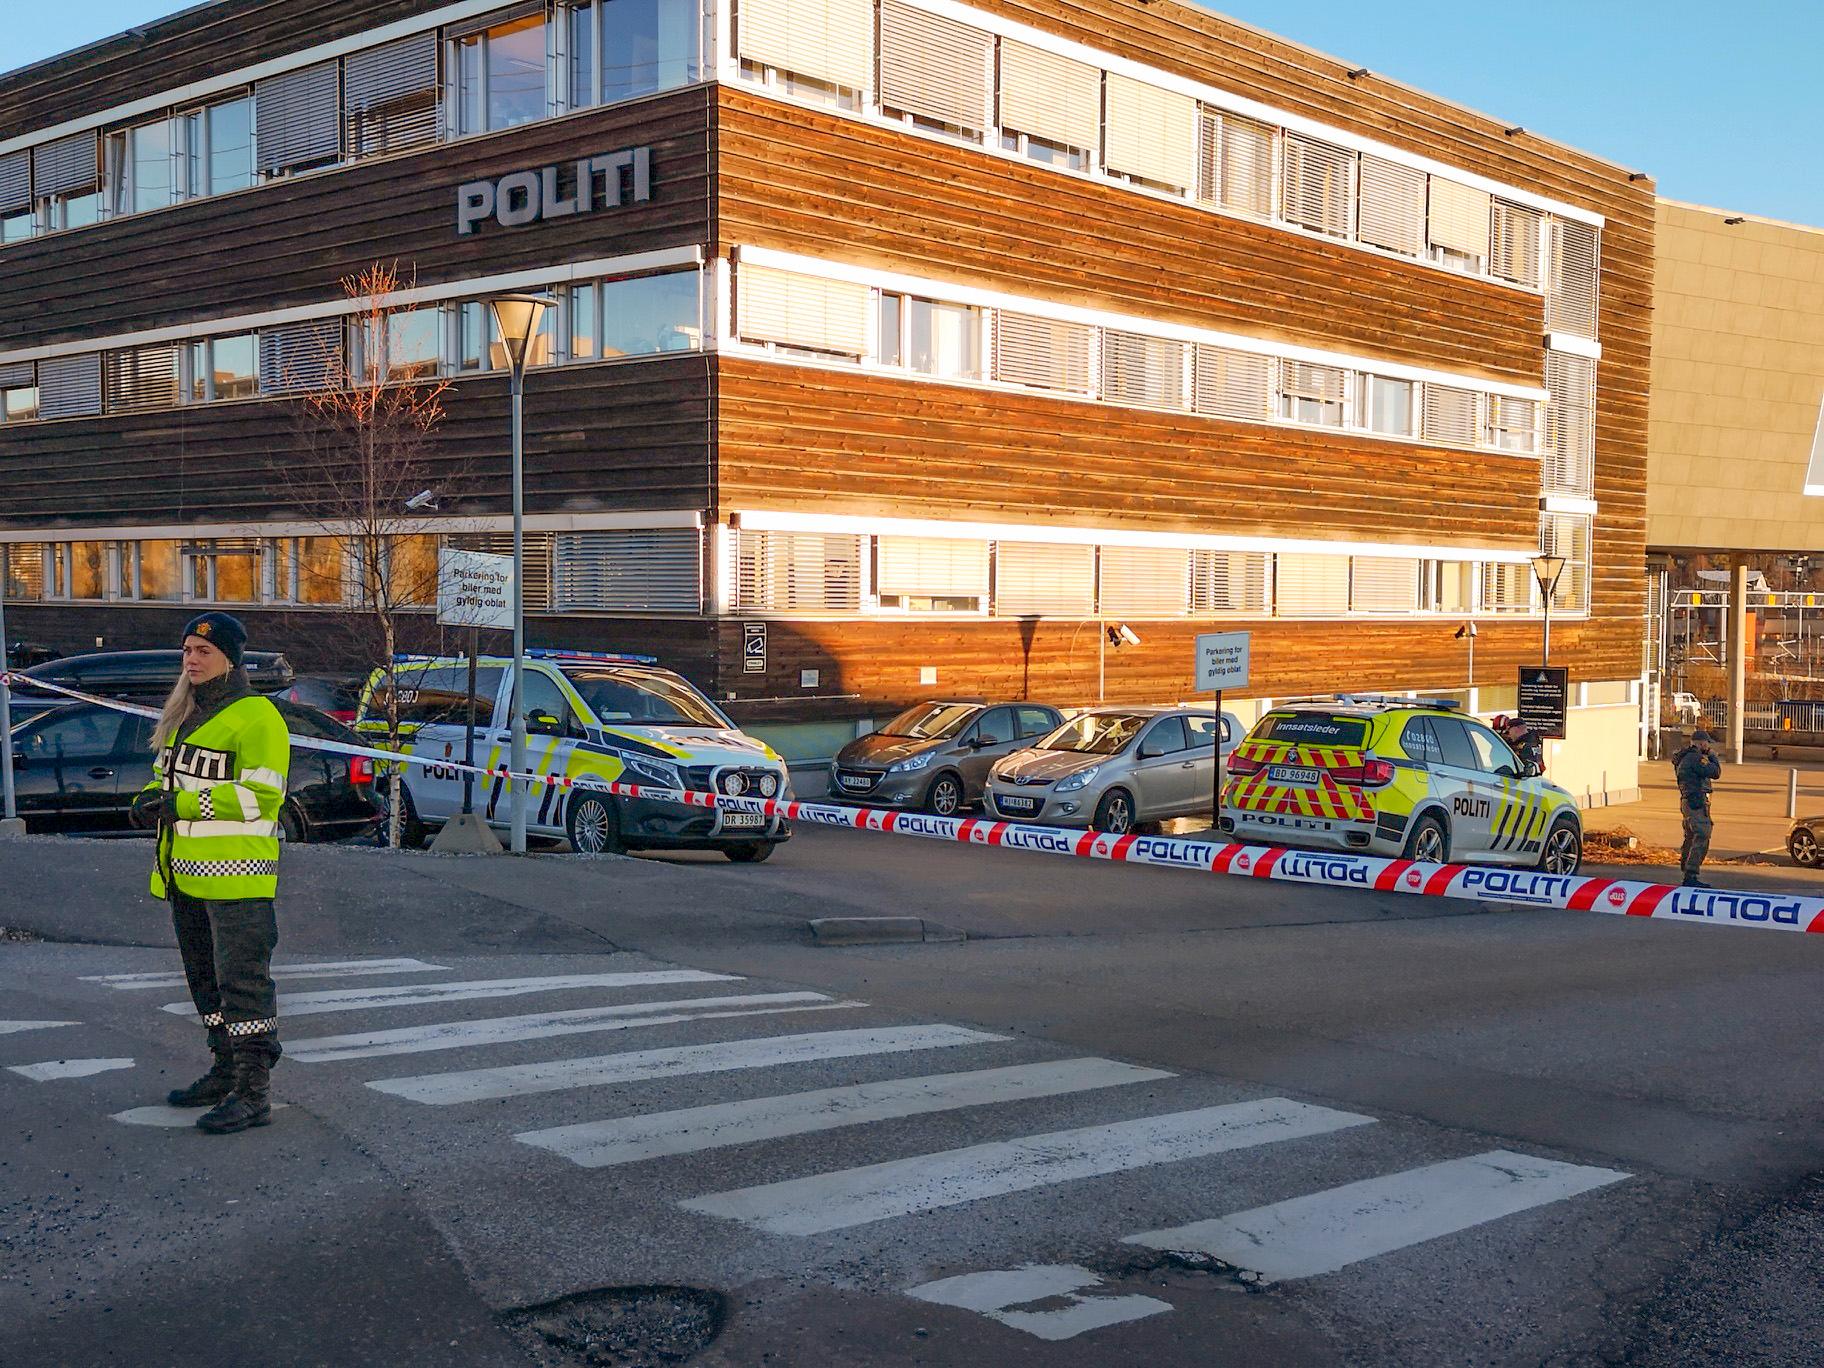 EVAKUERT: Det er funnet en uidentifisert gjenstand i politihuset i Ski i Akershus. Kundemottaket i politihuset er evakuert mens politiets bombegruppe undersøker gjenstanden. 